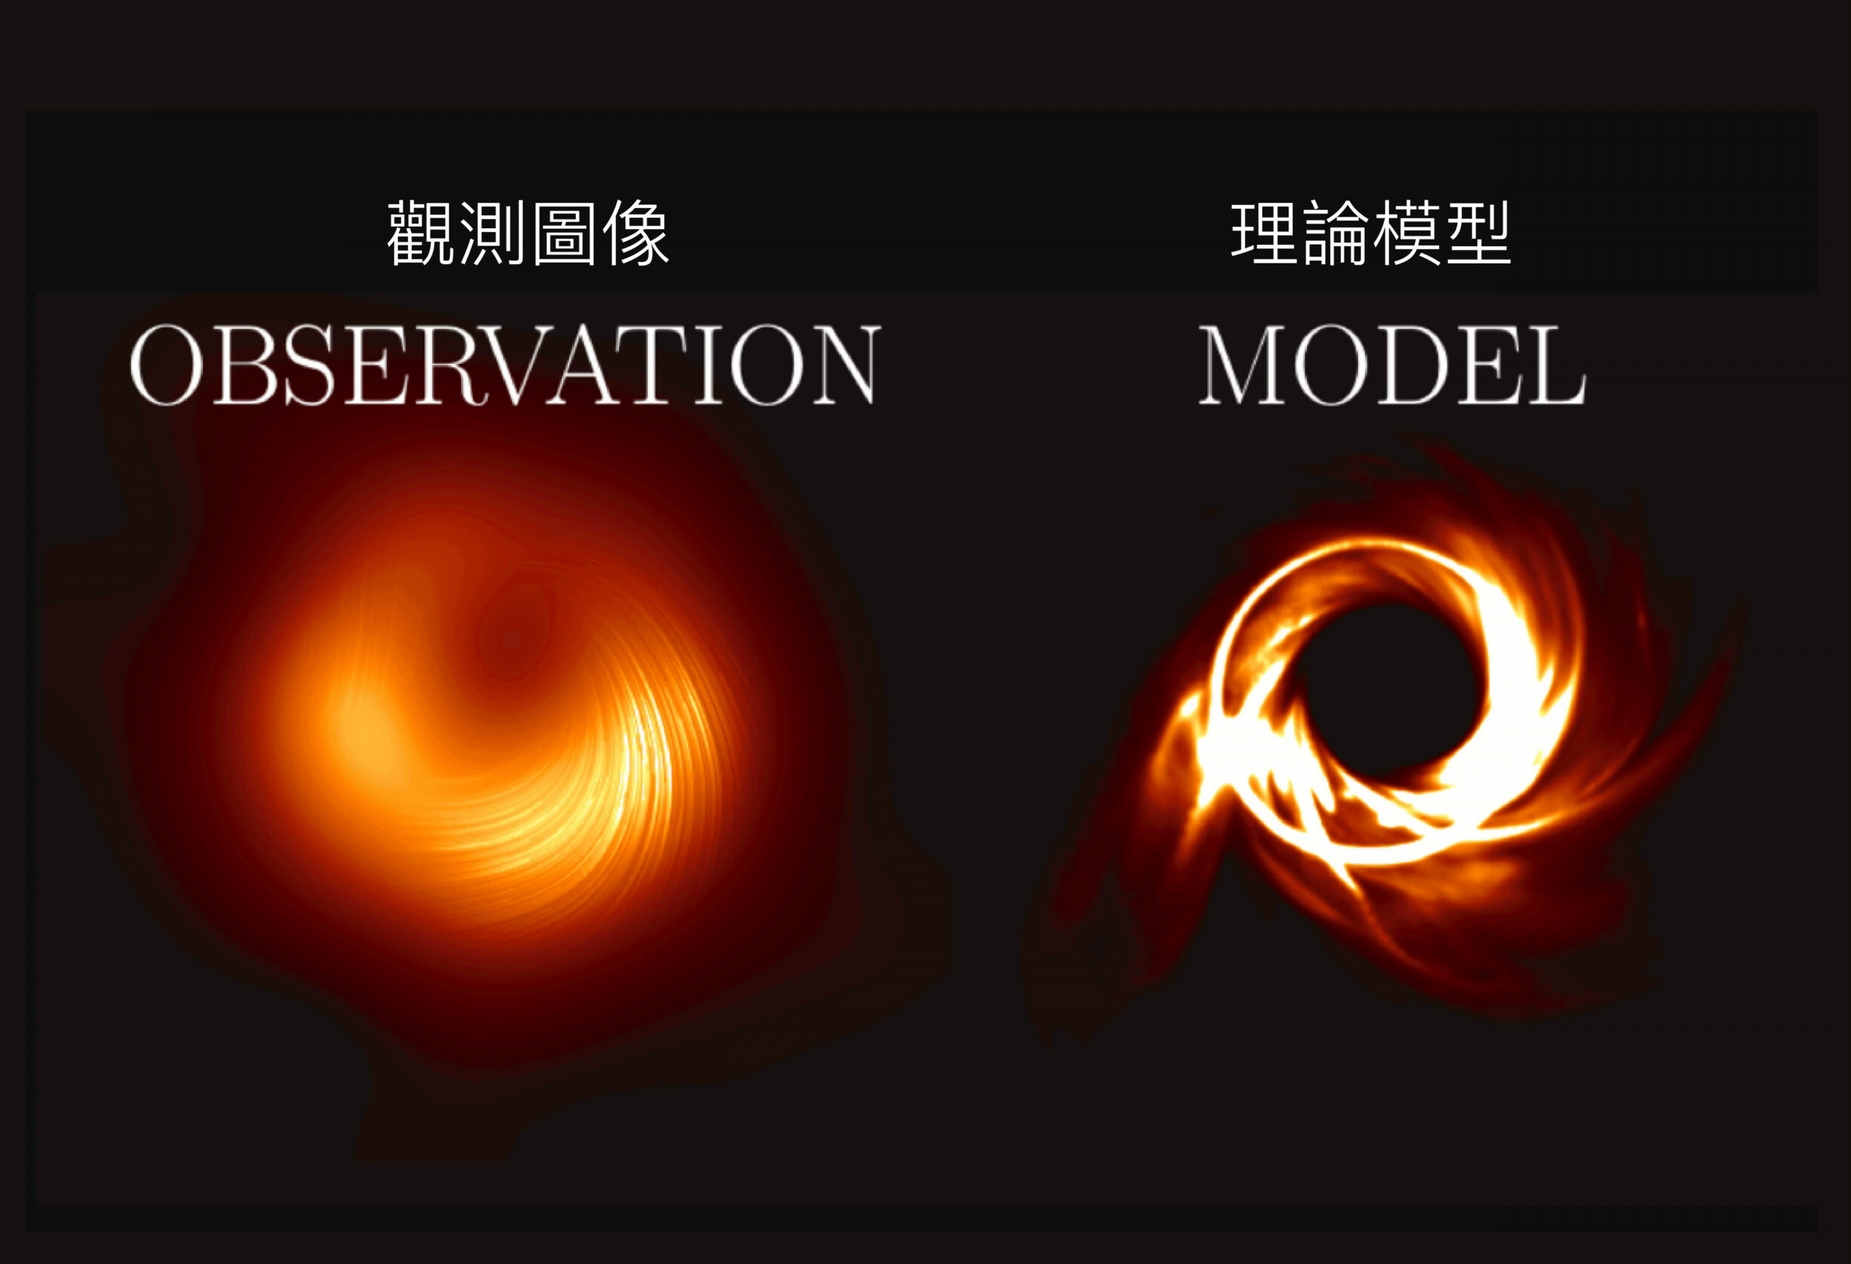 M87 黑洞观测影像与理论模型比较，可预期未来观测解析度提高之后，有机会看到更多细致的结构。资料来源│S. Issaoun, M. Mościbrod